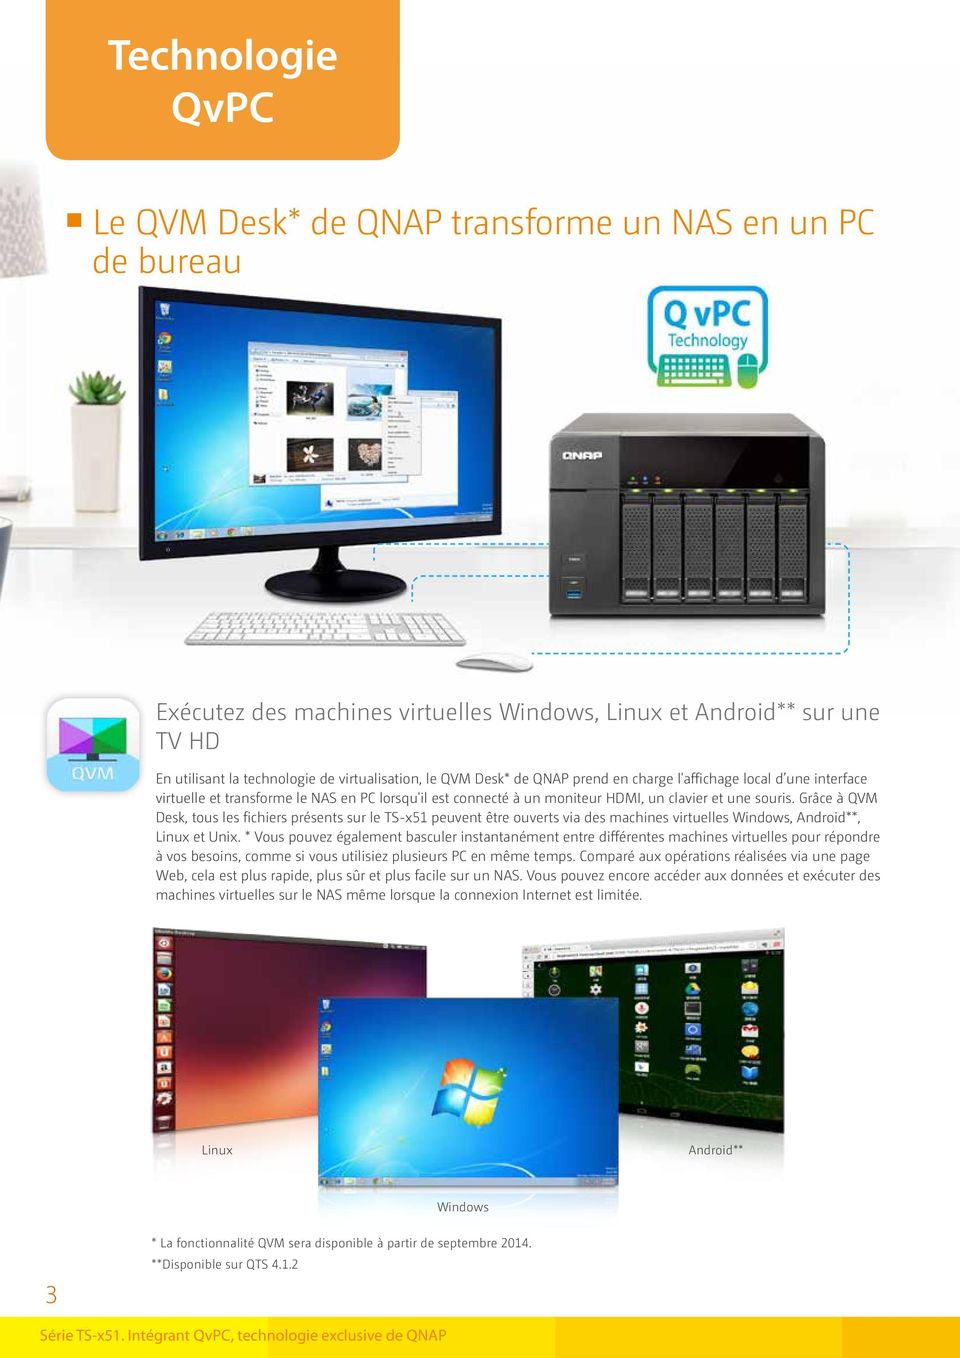 Grâce à QVM Desk, tous les fichiers présents sur le TS-x51 peuvent être ouverts via des machines virtuelles Windows, Android**, Linux et Unix.